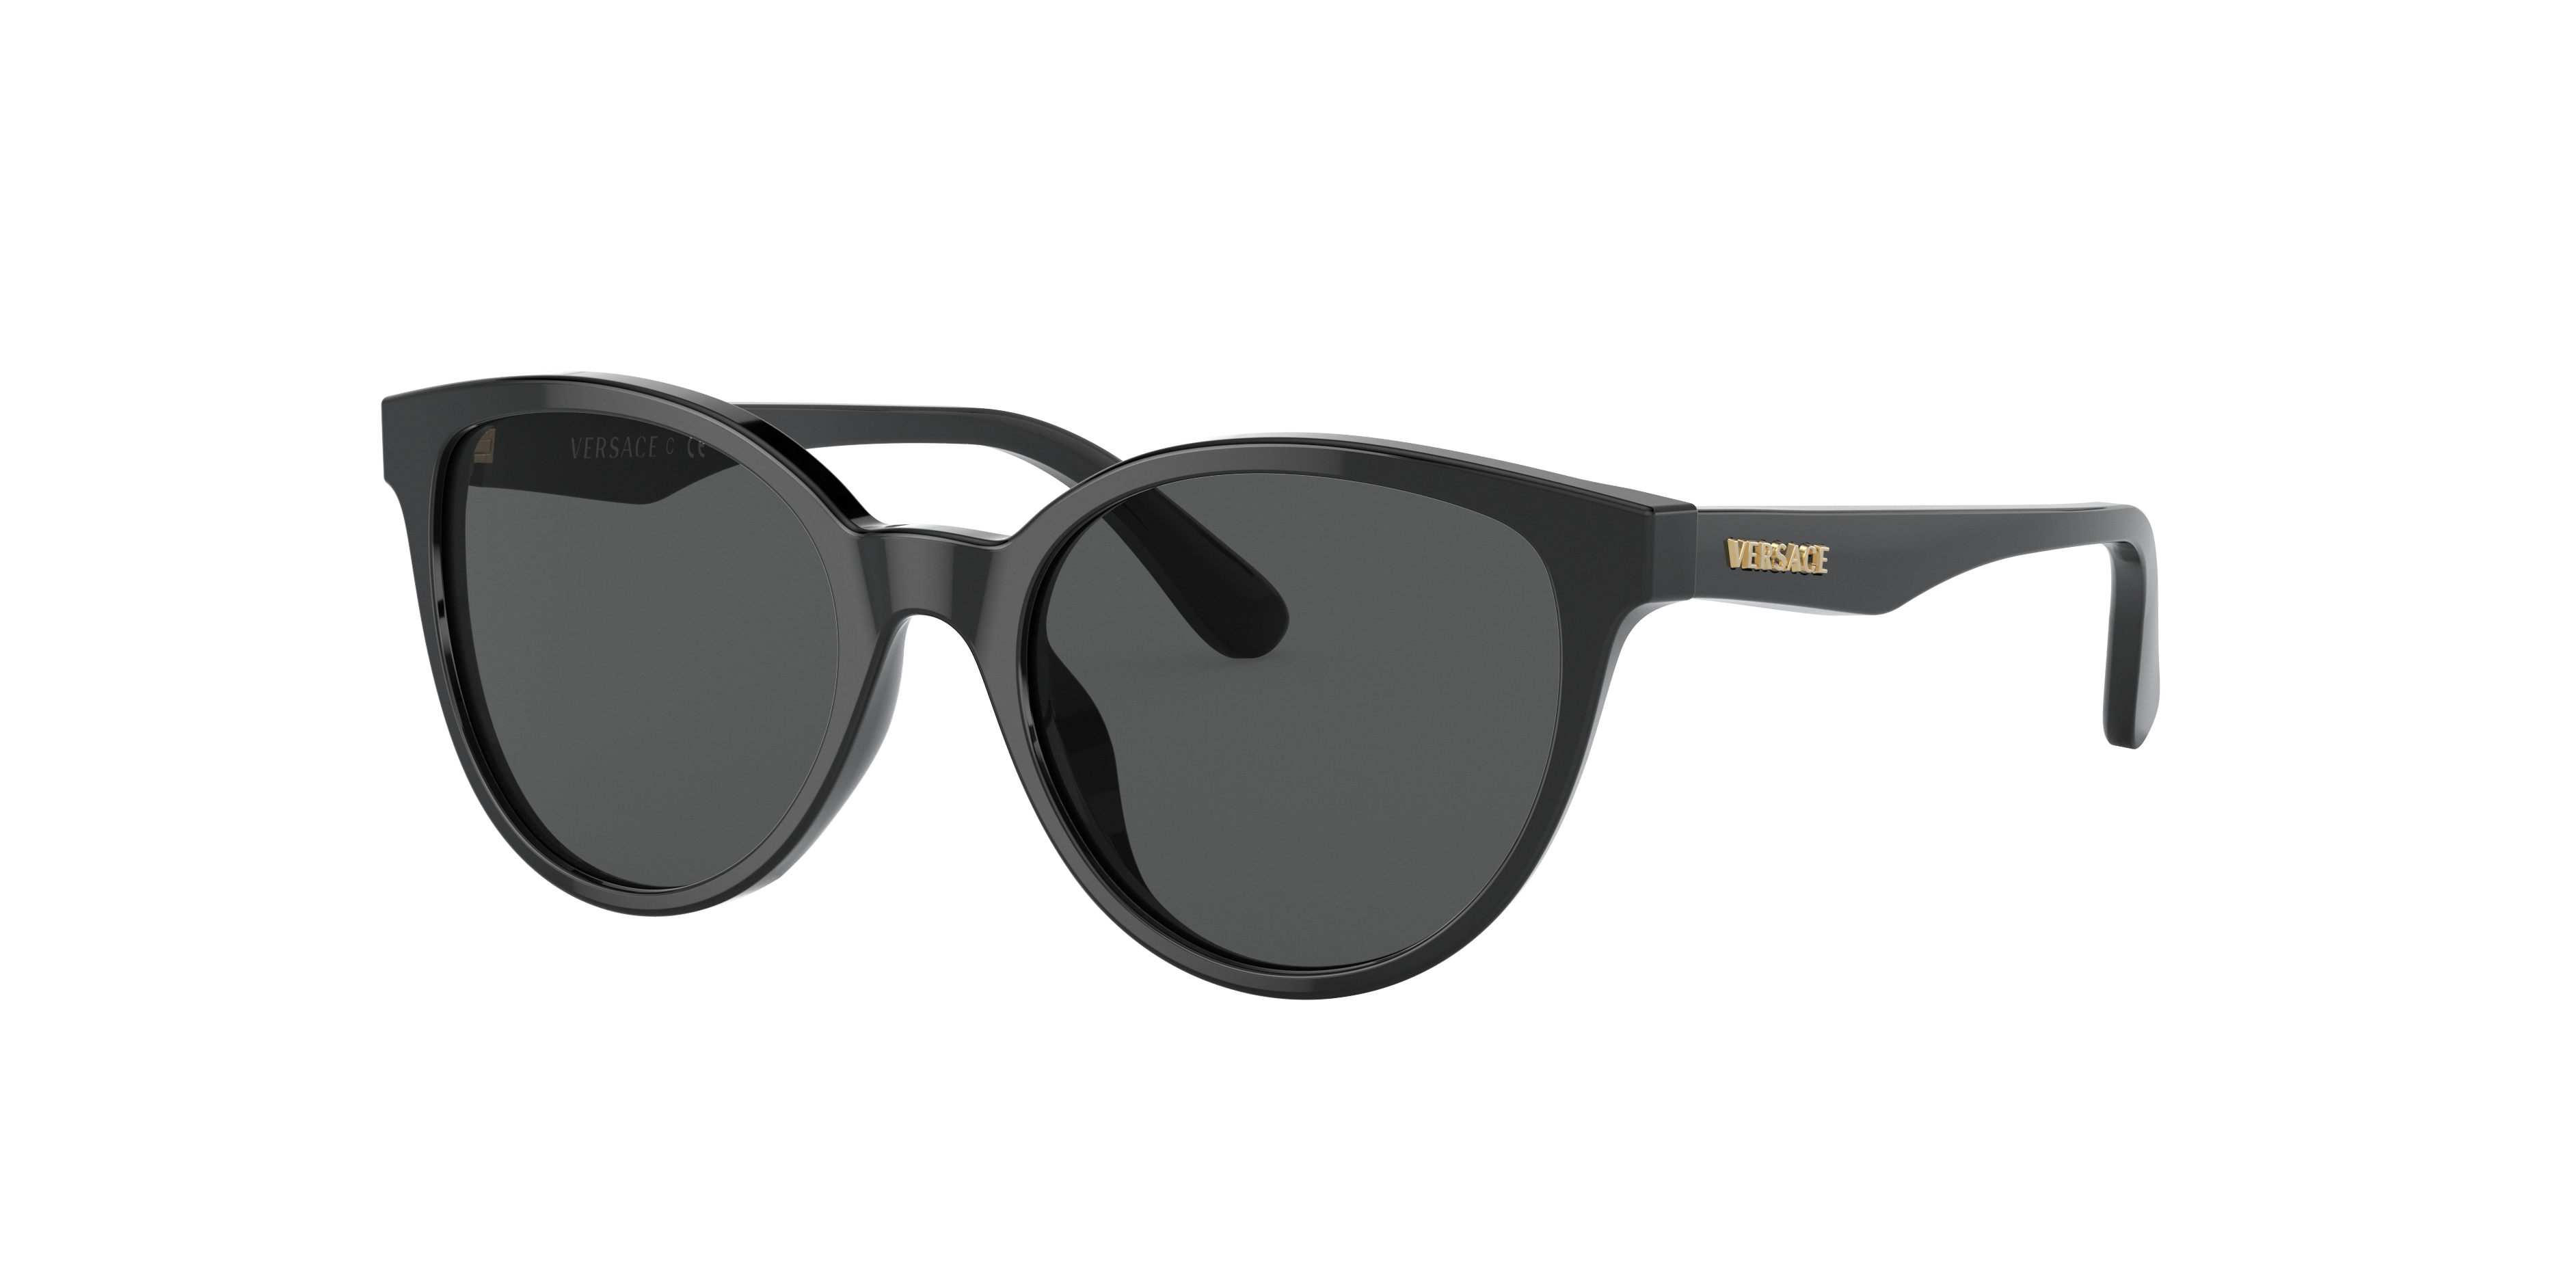 Consulte nosso catálogo de Óculos de Sol Versace Eyewear com diversos modelos e preços para sua escolha.